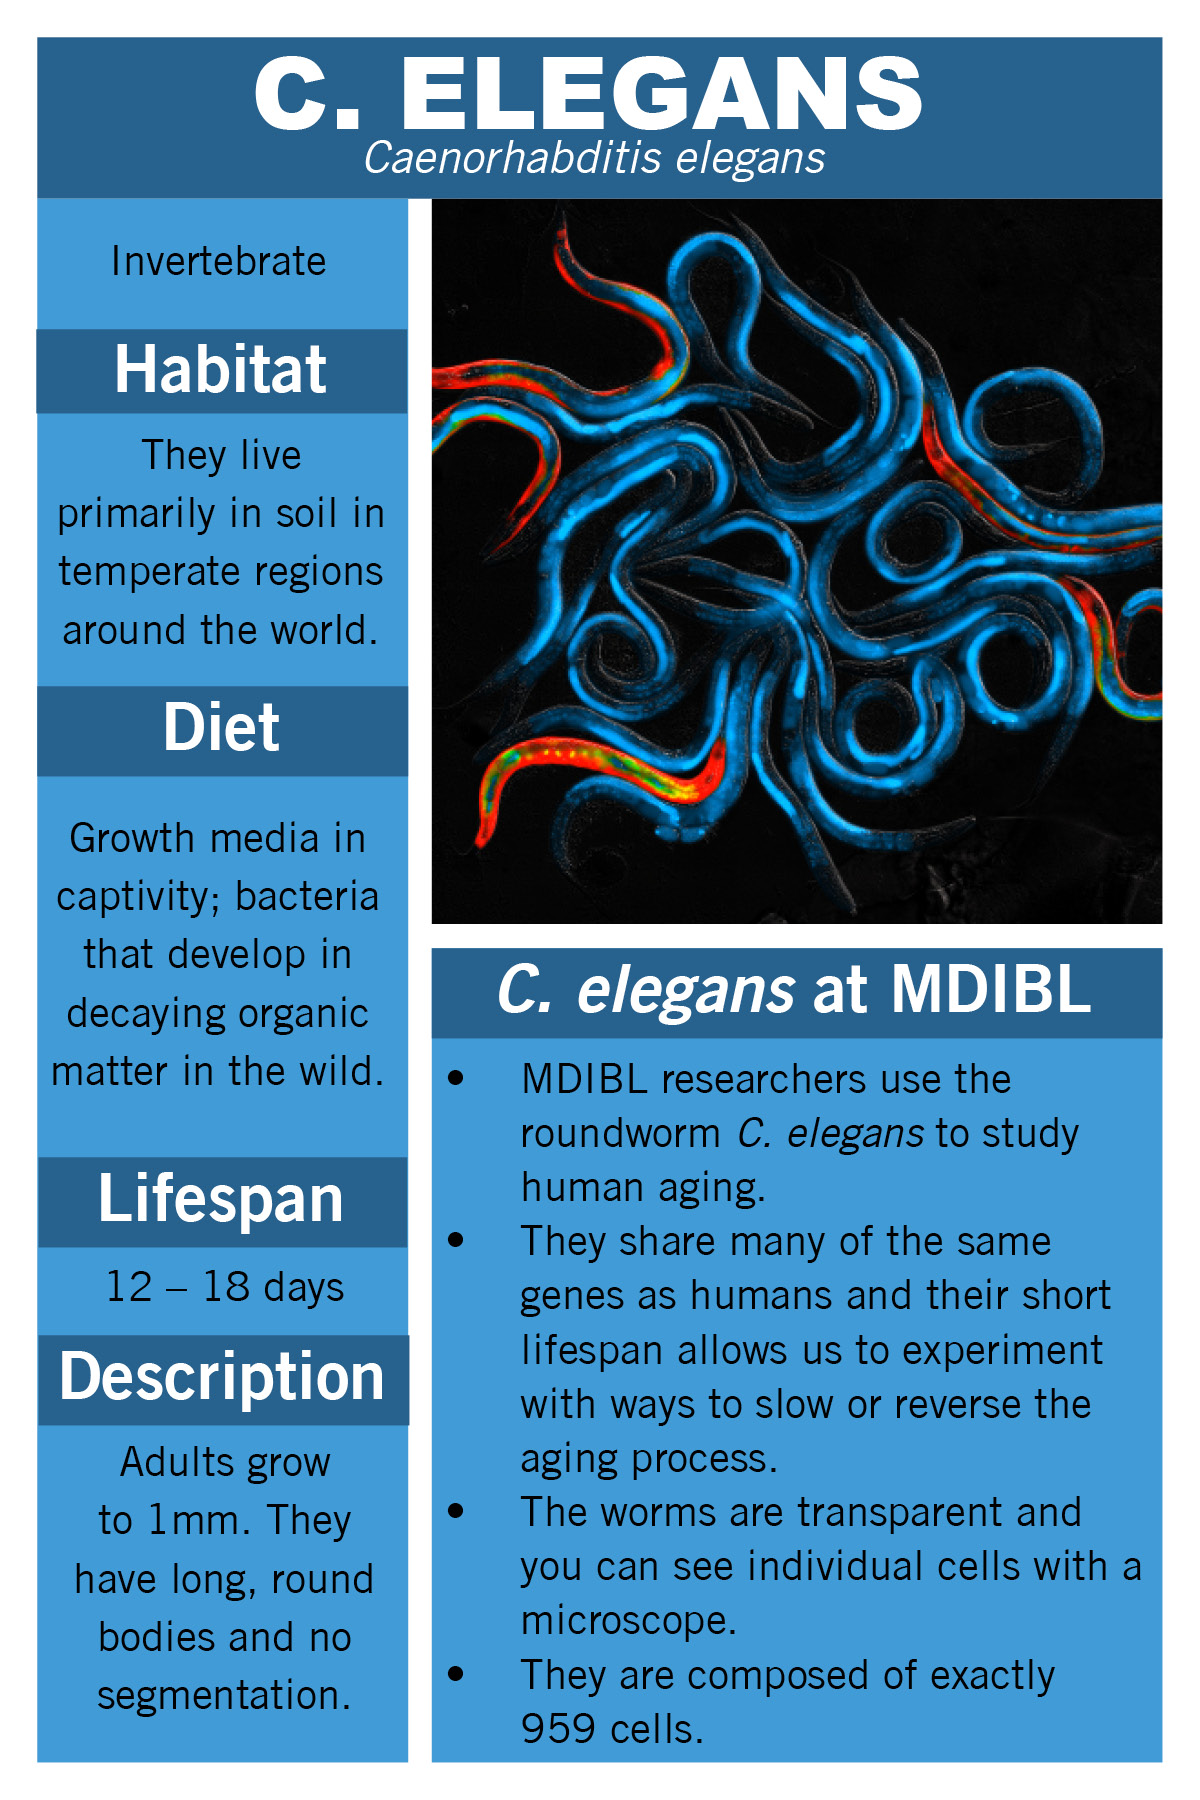 c. elegans facts